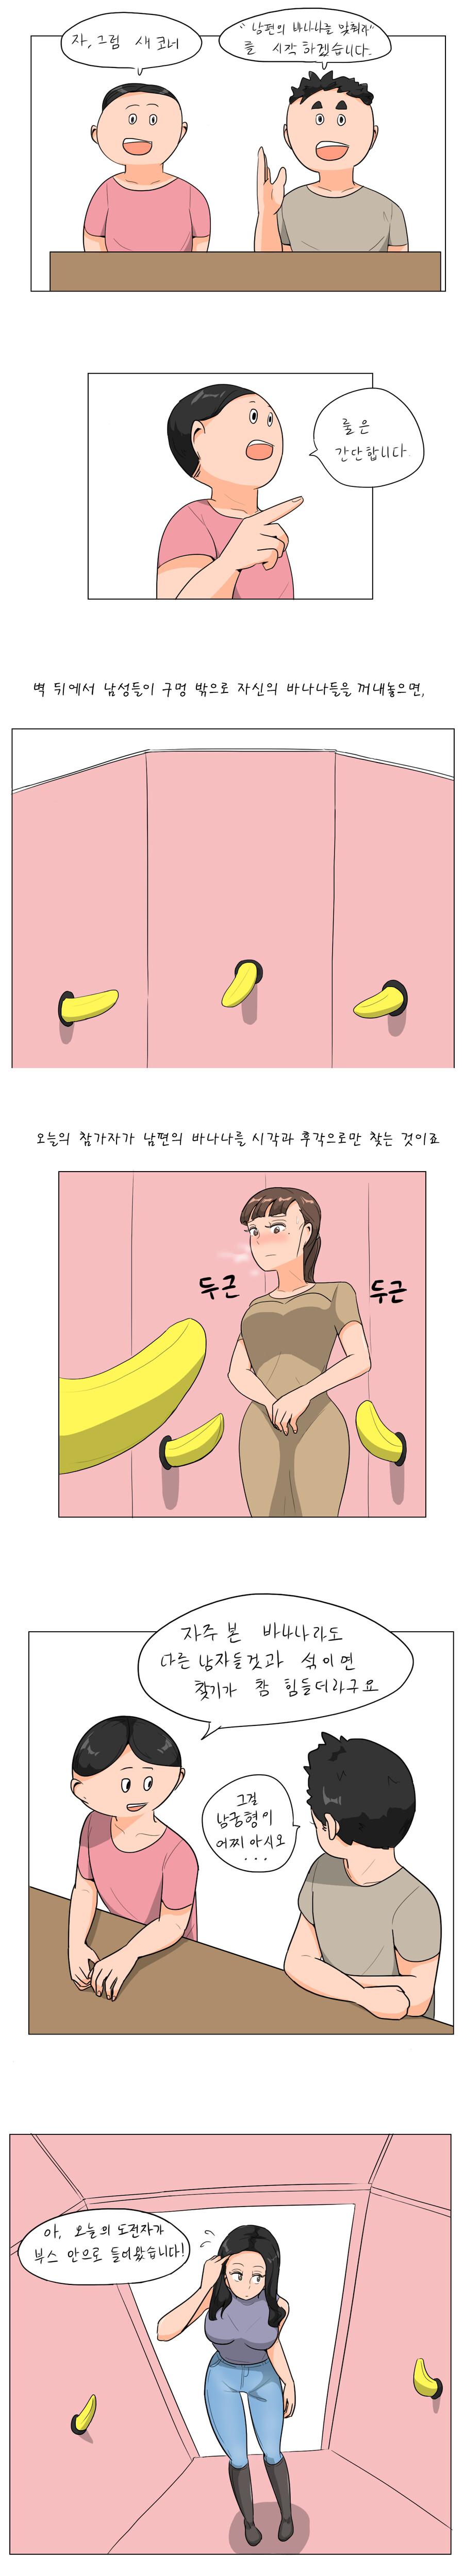 (오싹오싹) 유부녀가 남편 바나나를 찾는.manwha